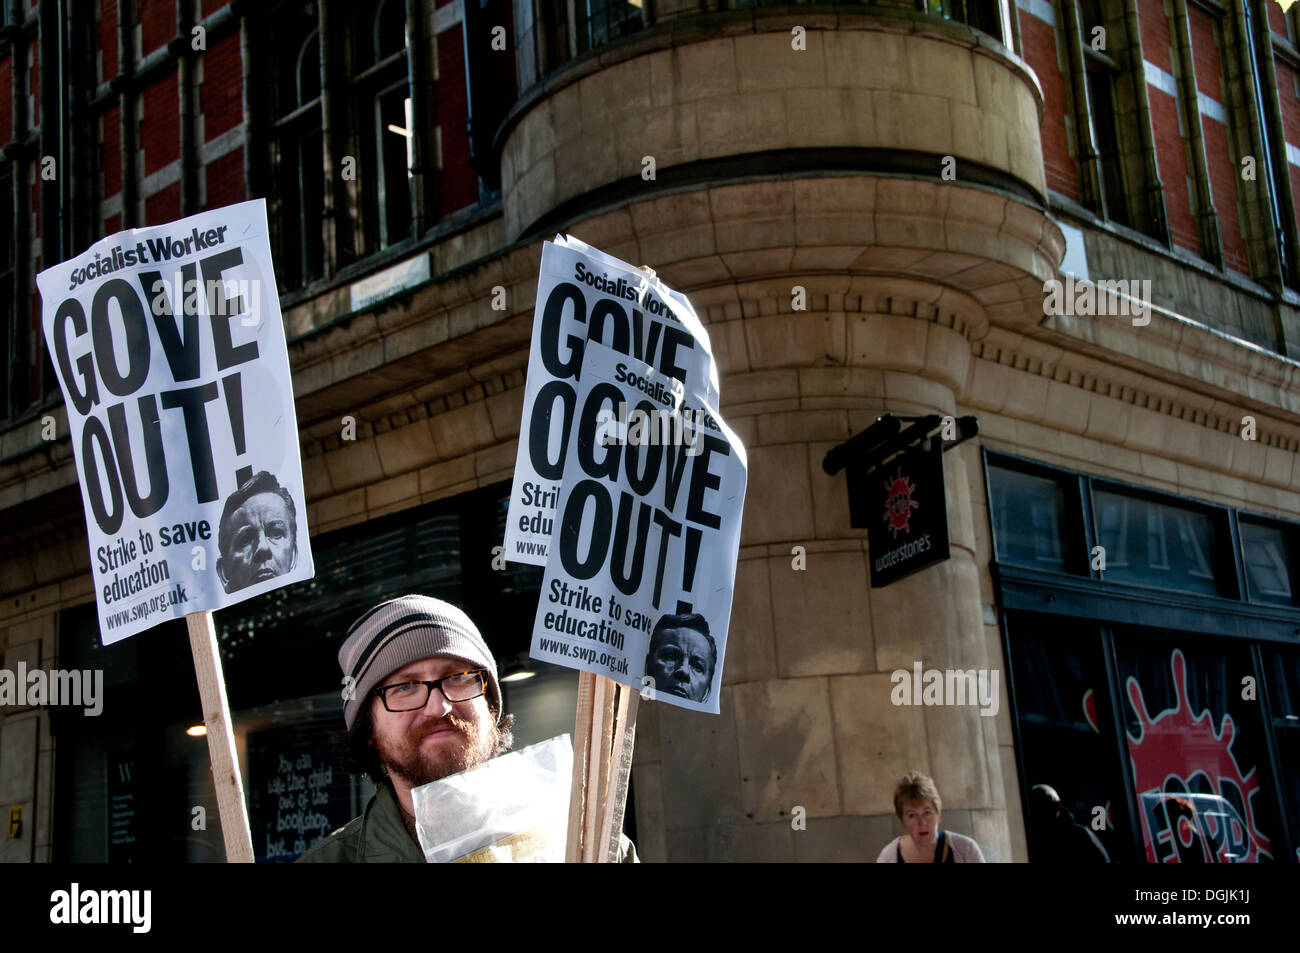 Il 17 ottobre 2013. Gli insegnanti di manifestare contro le proposte di modifica alle pensioni. Un uomo detiene due cartelloni dicendo "Gove out'. Foto Stock